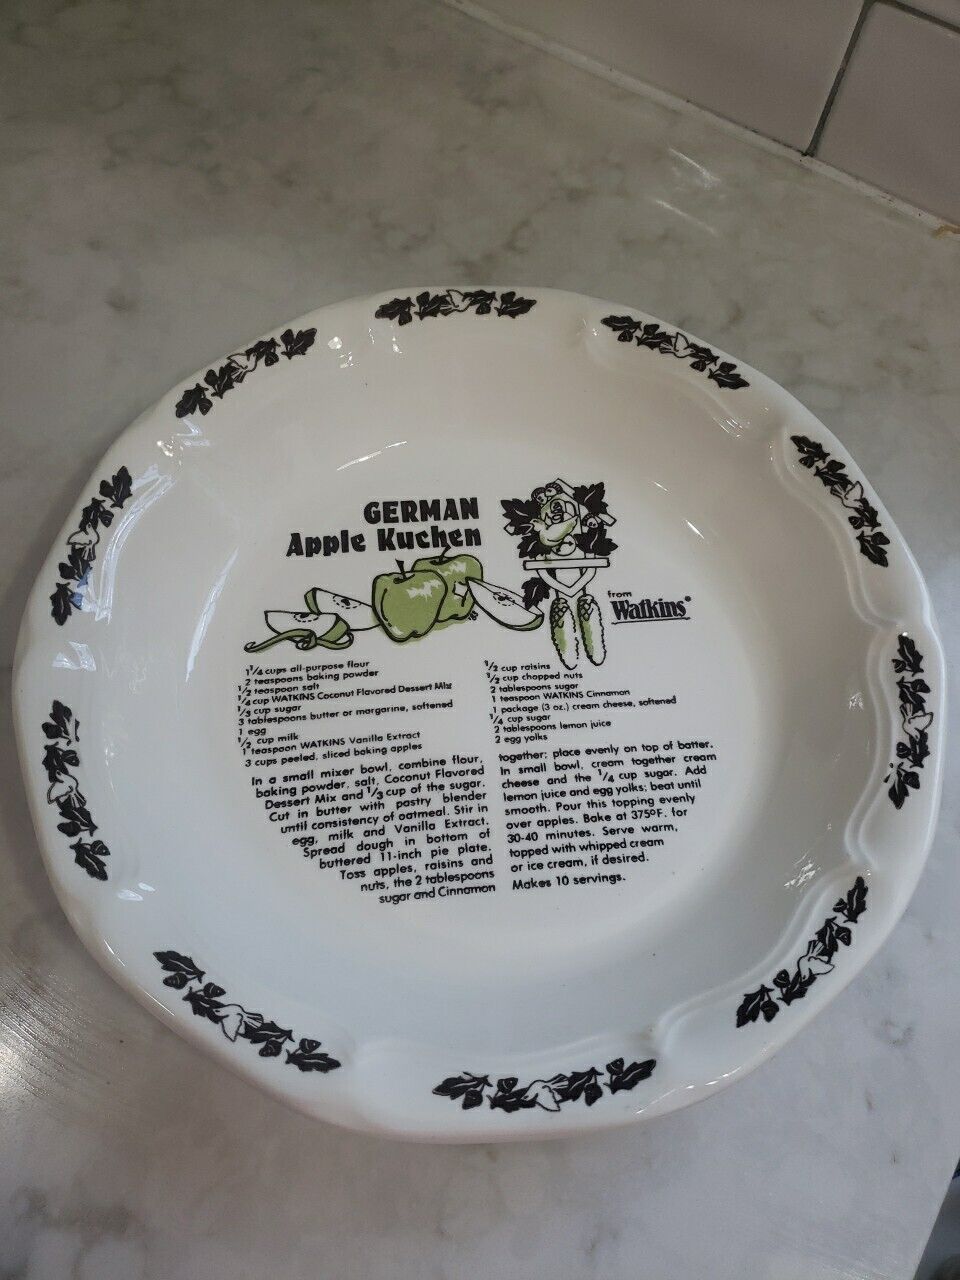 Watkins German Apple Kuchen Recipe Pie Plate Dish Vintage 1983